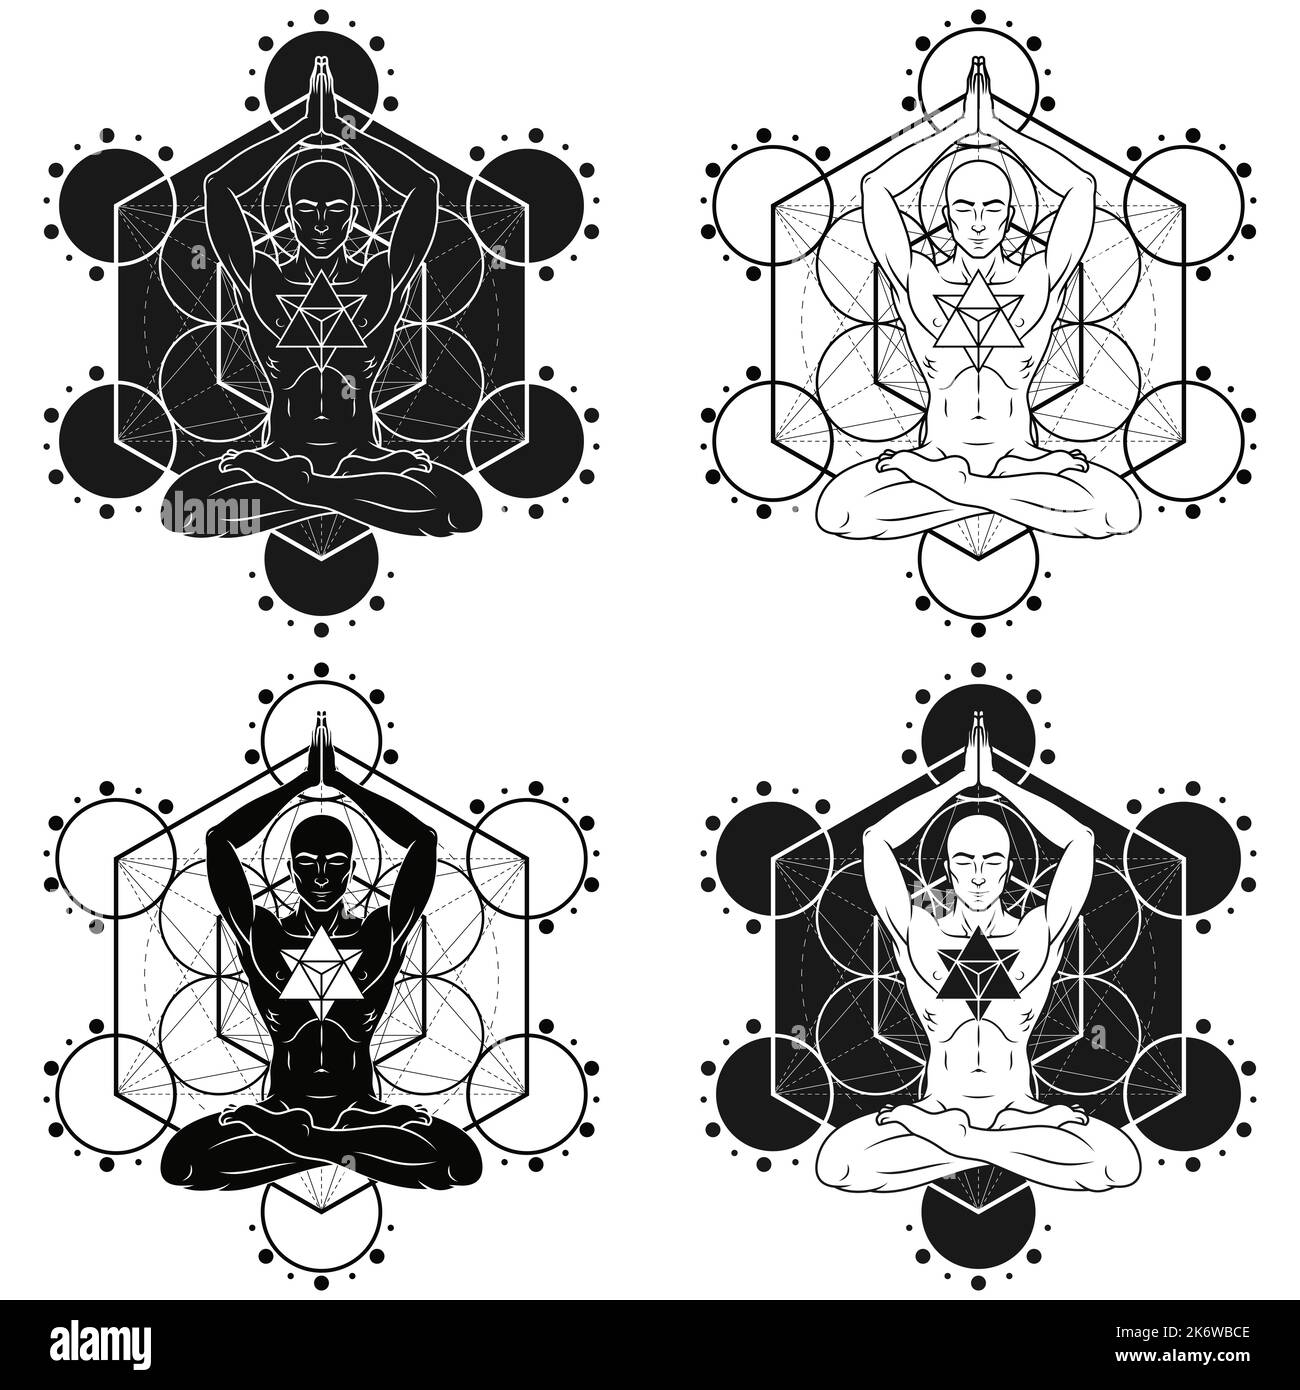 Vektor-Design des Menschen meditiert in Lotusposition mit und Merkaba, Mann macht Yoga und metatron Figur im Hintergrund Stock Vektor